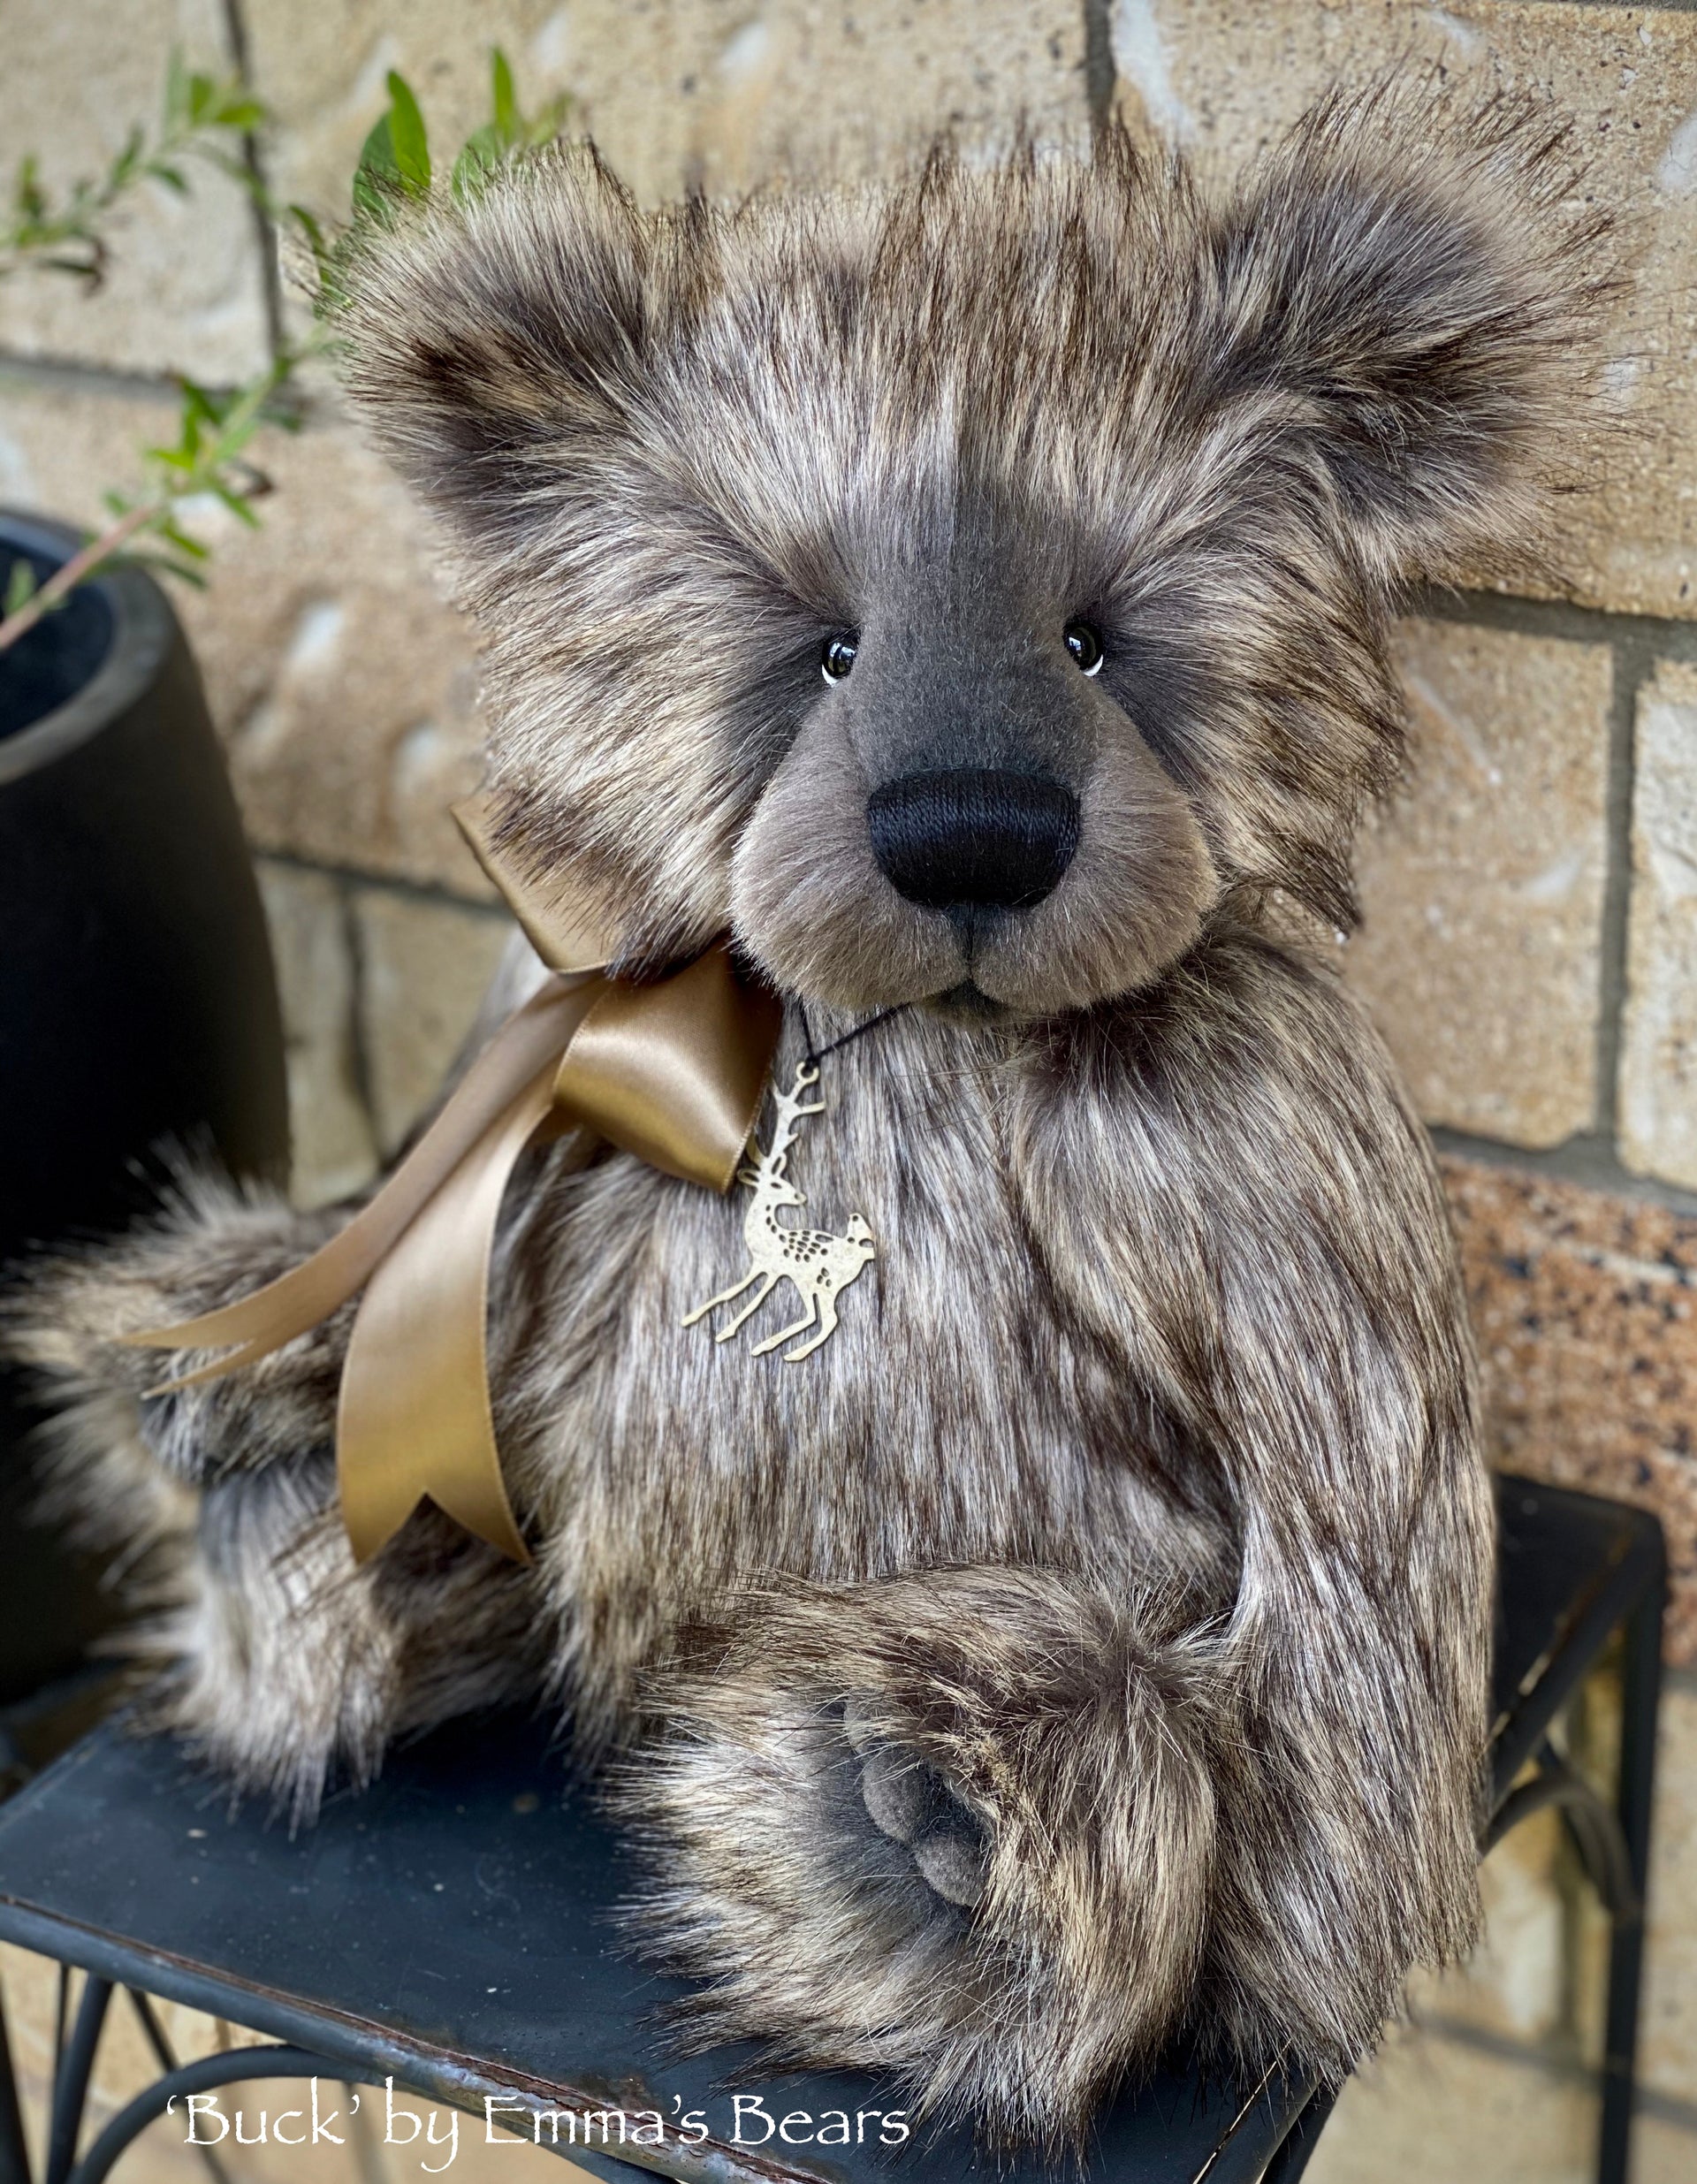 Buck - 17" faux fur bear by Emmas Bears - OOAK